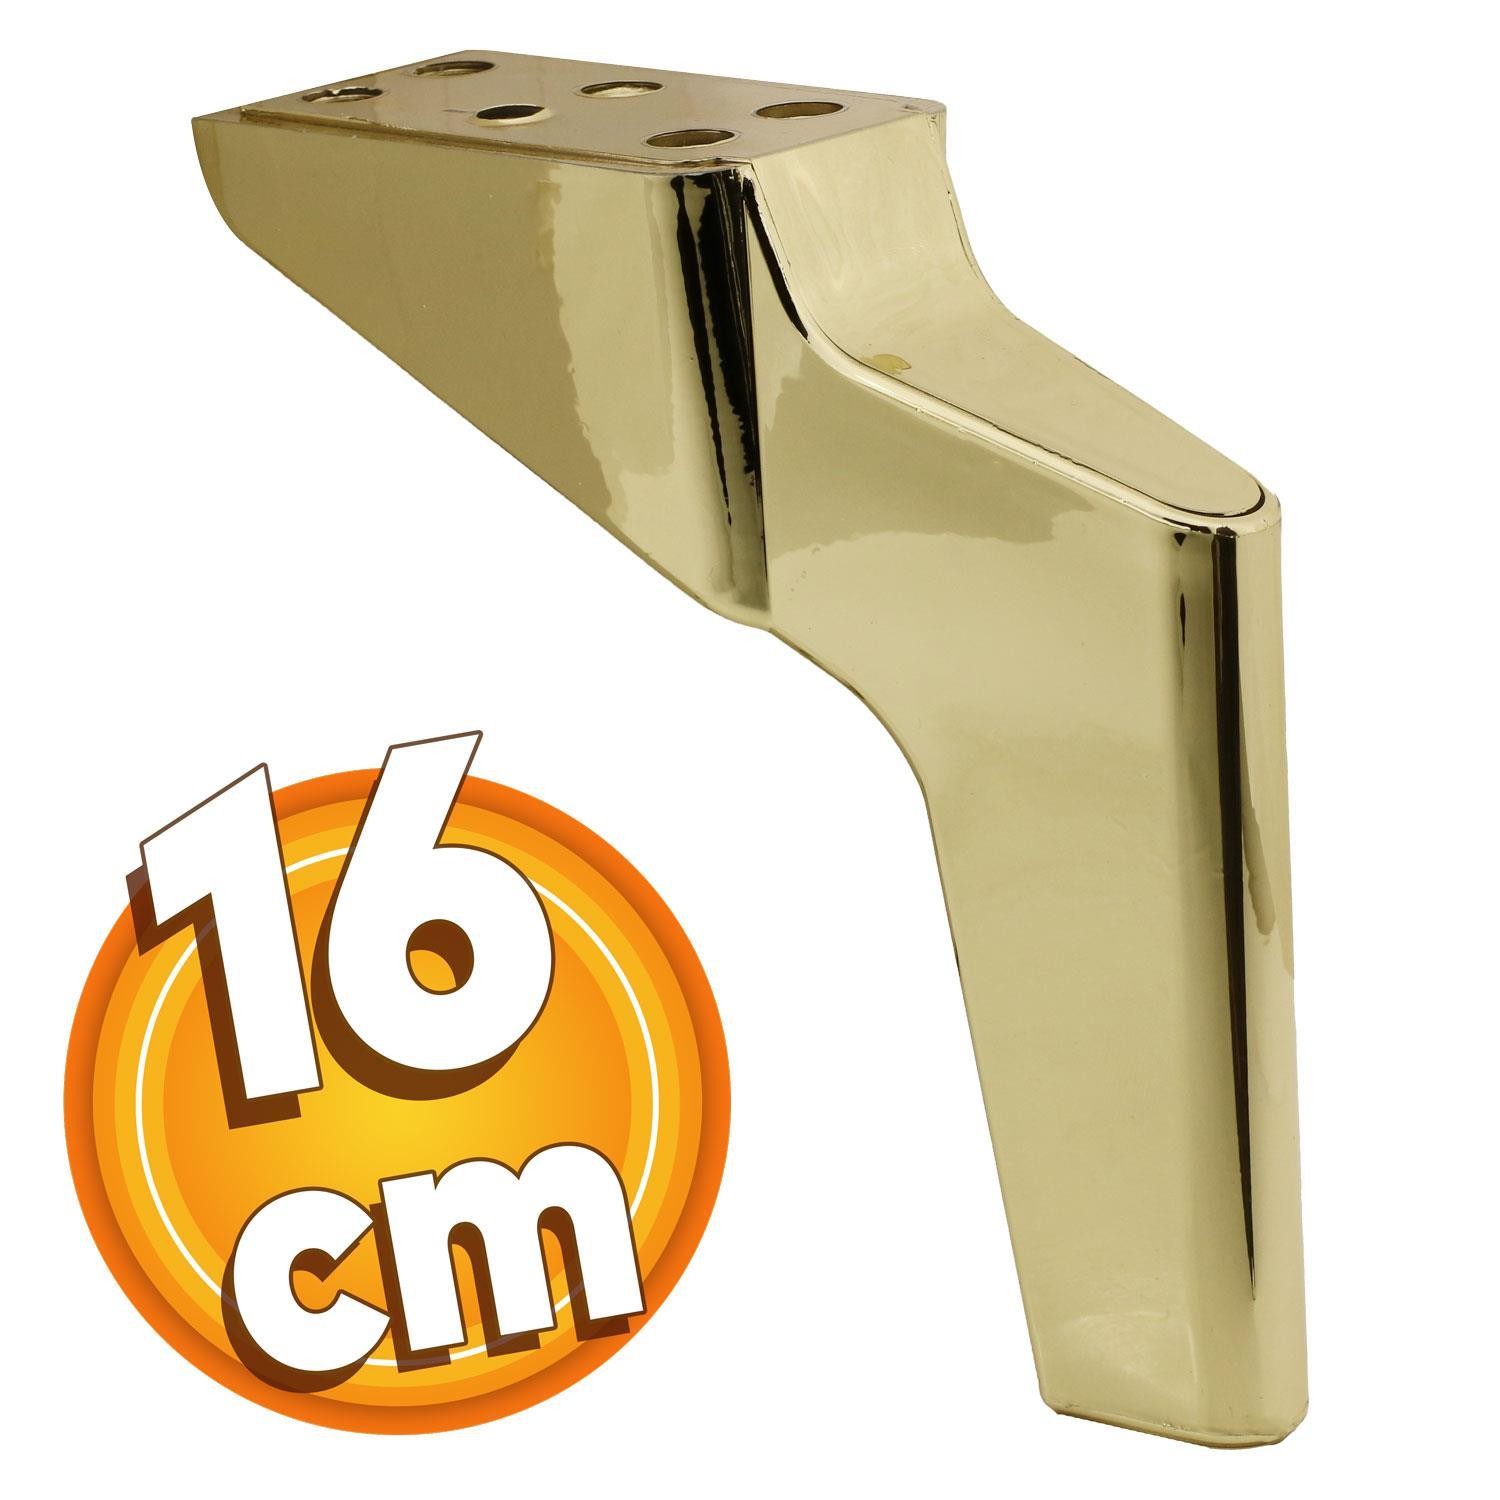 Logan 6'lı Set Mobilya TV Ünitesi Çekyat Koltuk Kanepe Destek Ayağı 16 cm Altın Ayak M8 Civatalı